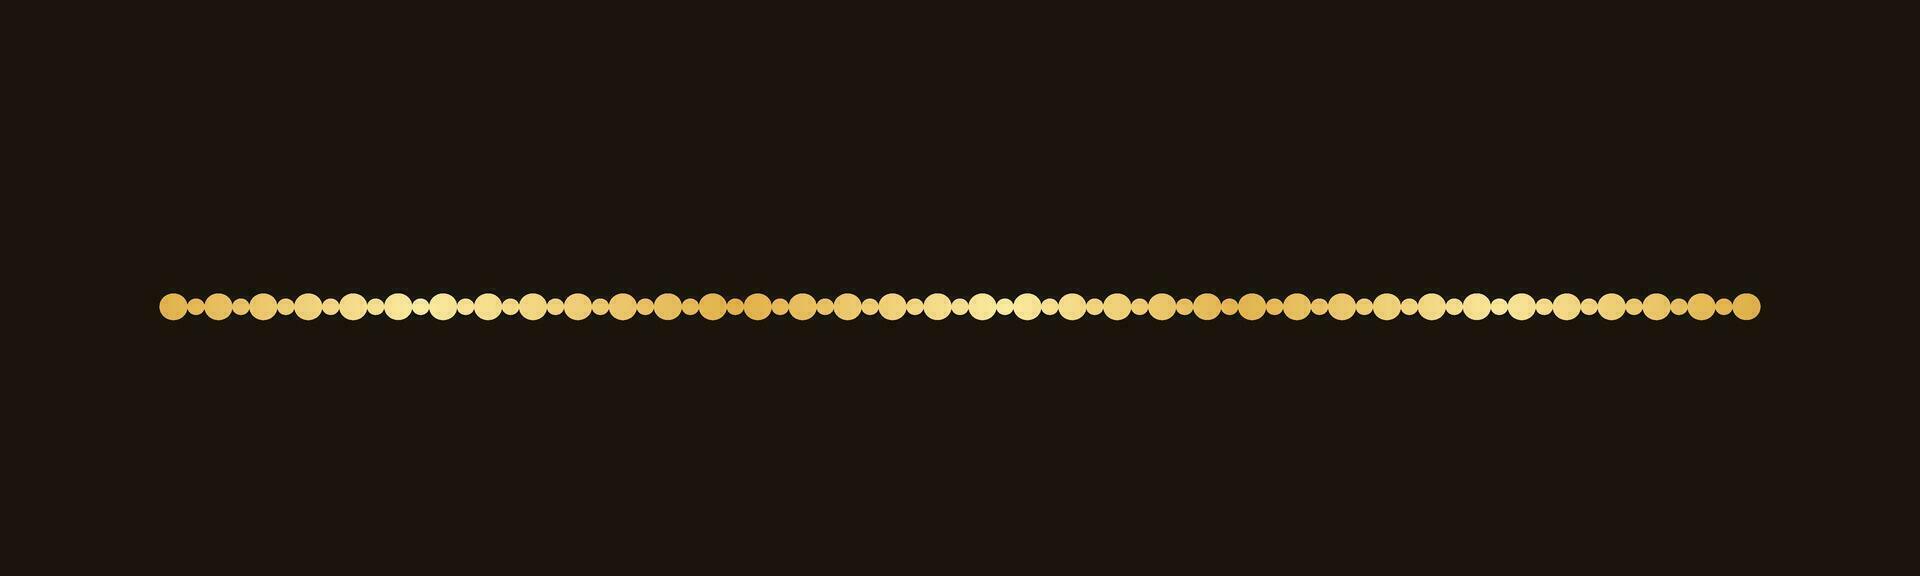 oro puntos modelo separador borde, dorado elegante romántico página texto divisor vector